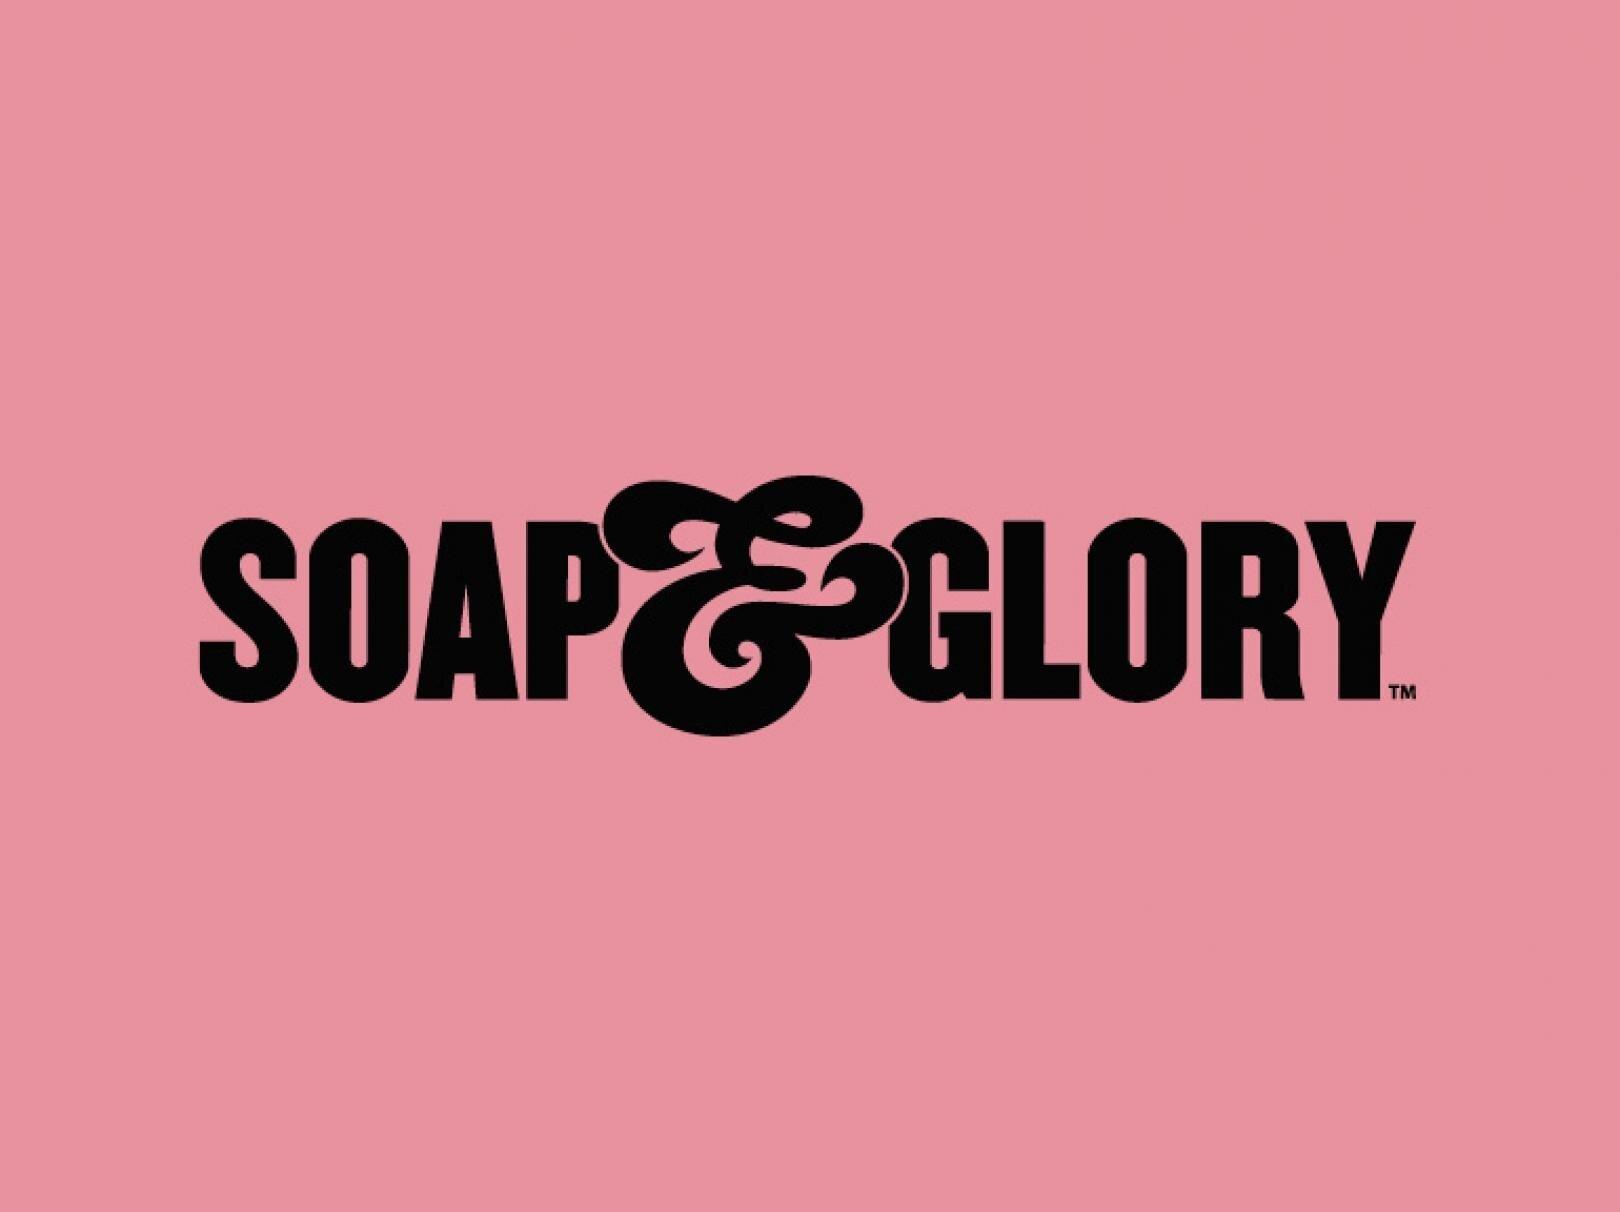 Thương hiệu Soap and Glory lluoon đem đến một vẻ phóng khoáng trong từng sản phẩm (Ảnh; internet)